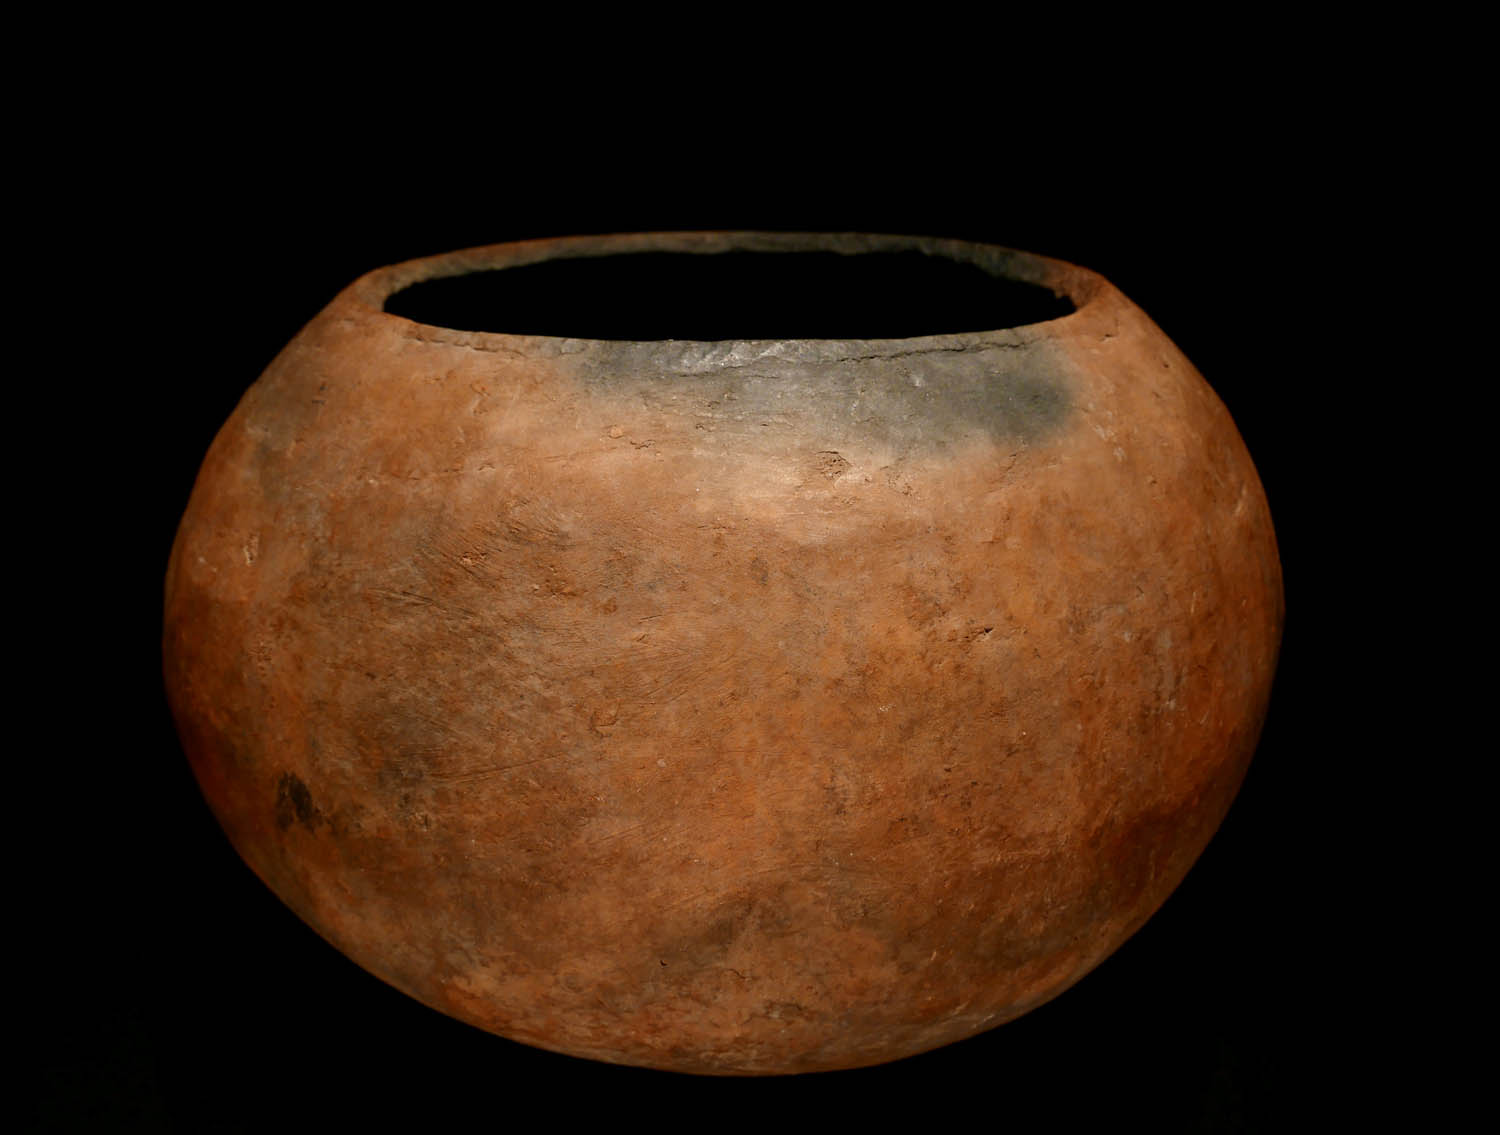 Biergefäß. Aufbau-Keramik, gebrannt im offenen Feuer. Dogon / Mali. H 17 cm.